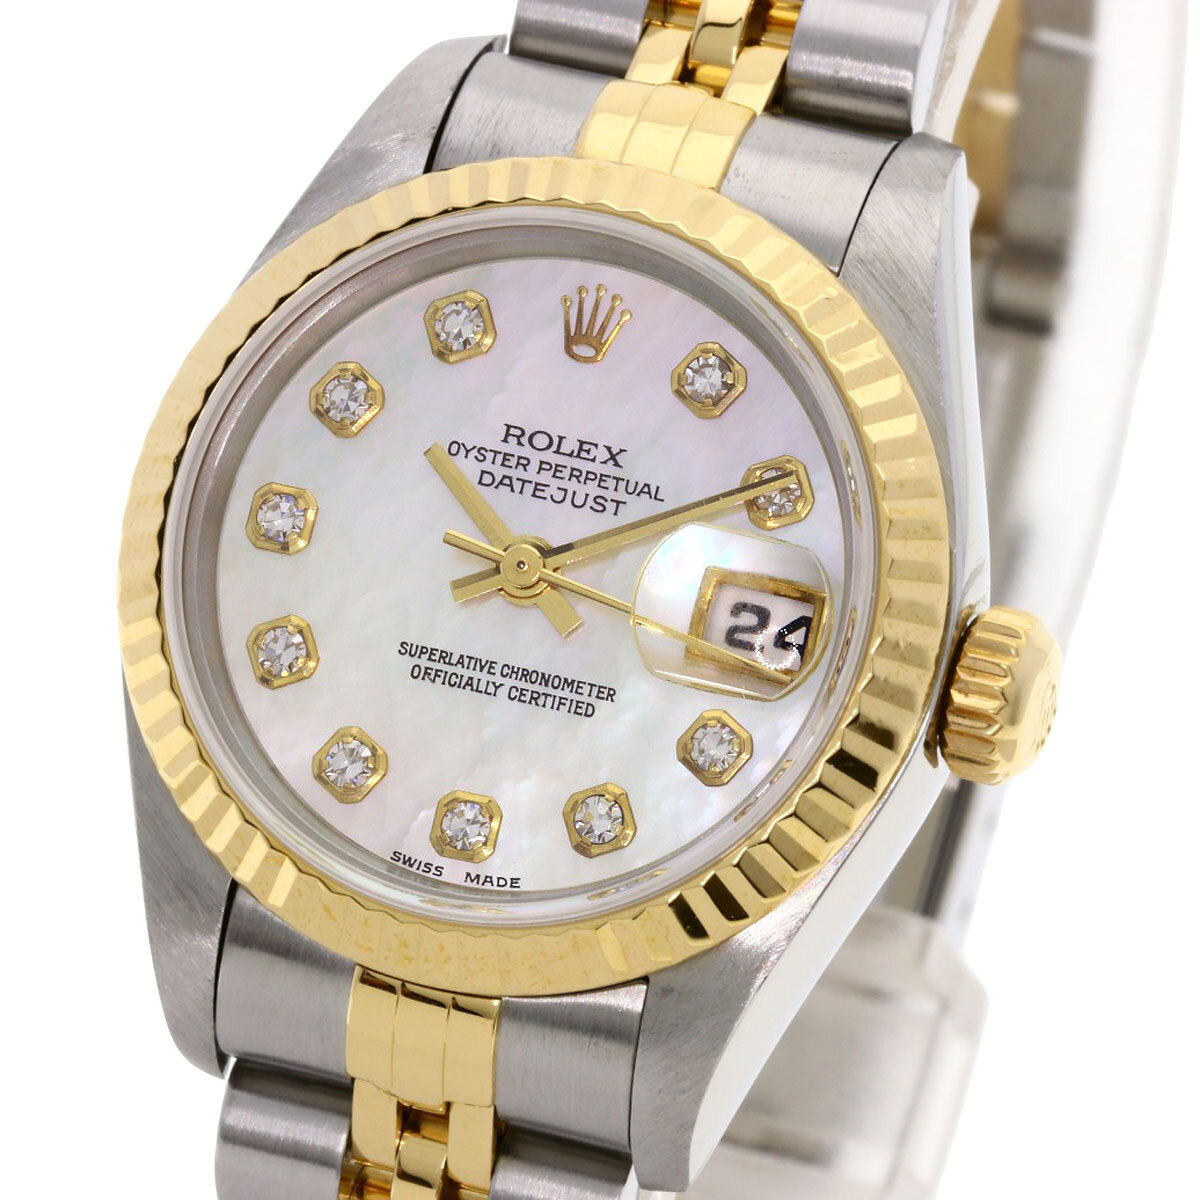 ROLEX ロレックス 69173NG デイトジャスト 10P ダイヤモンド 腕時計 ステンレススチール SSxK18YG レディース 中古_画像3